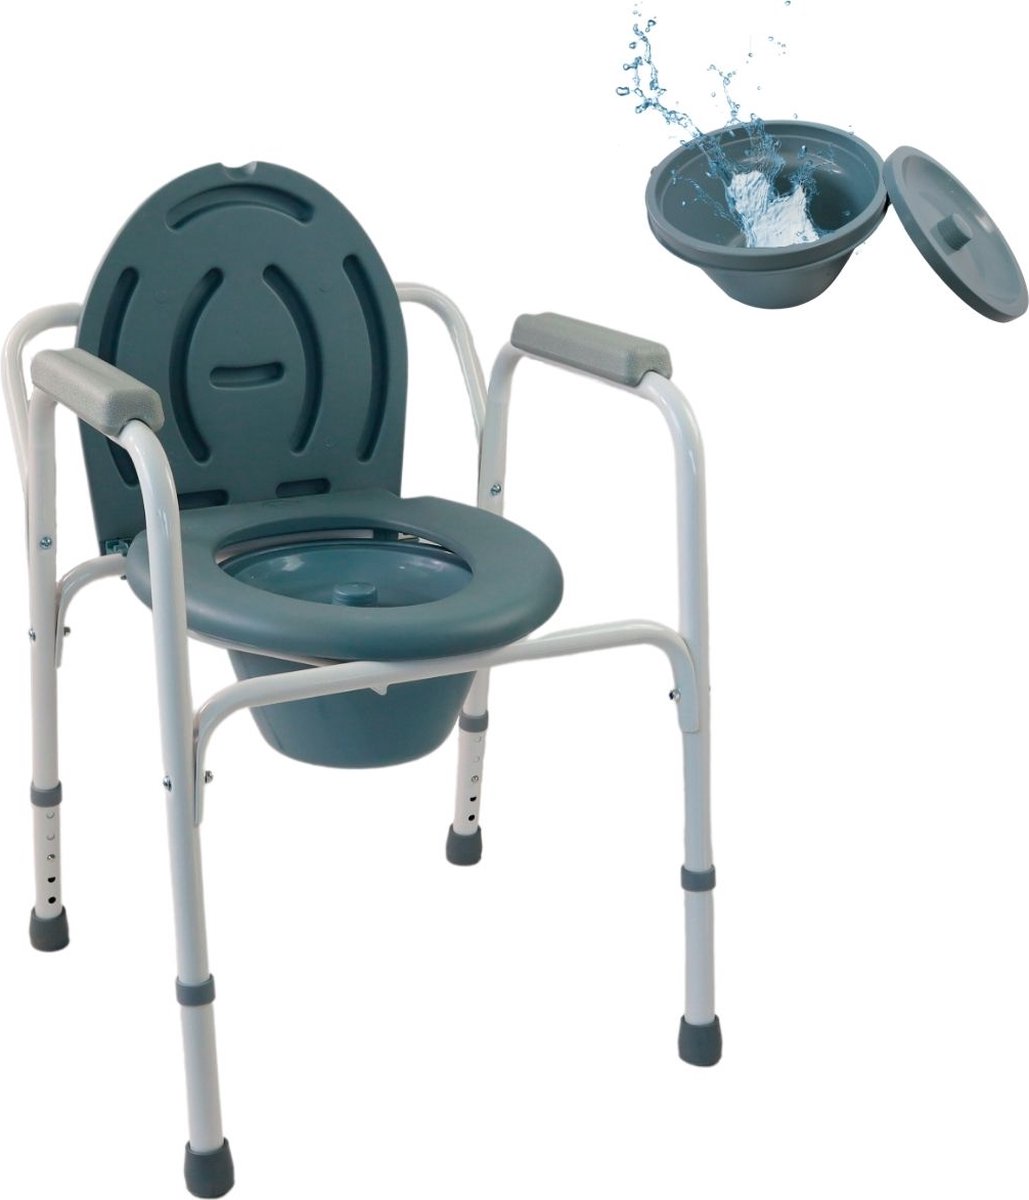 Mobiclinic Arroyo - Toiletstoel - In Hoogte Verstelbare - Toiletstoel voor Volwassenen en Handicap - Verrijdbare - Deksel - Opvouwbare - Mobiele toiletstoel - Antislip doppen - Armleuningen - Verchroomd Staal - mobiclinic